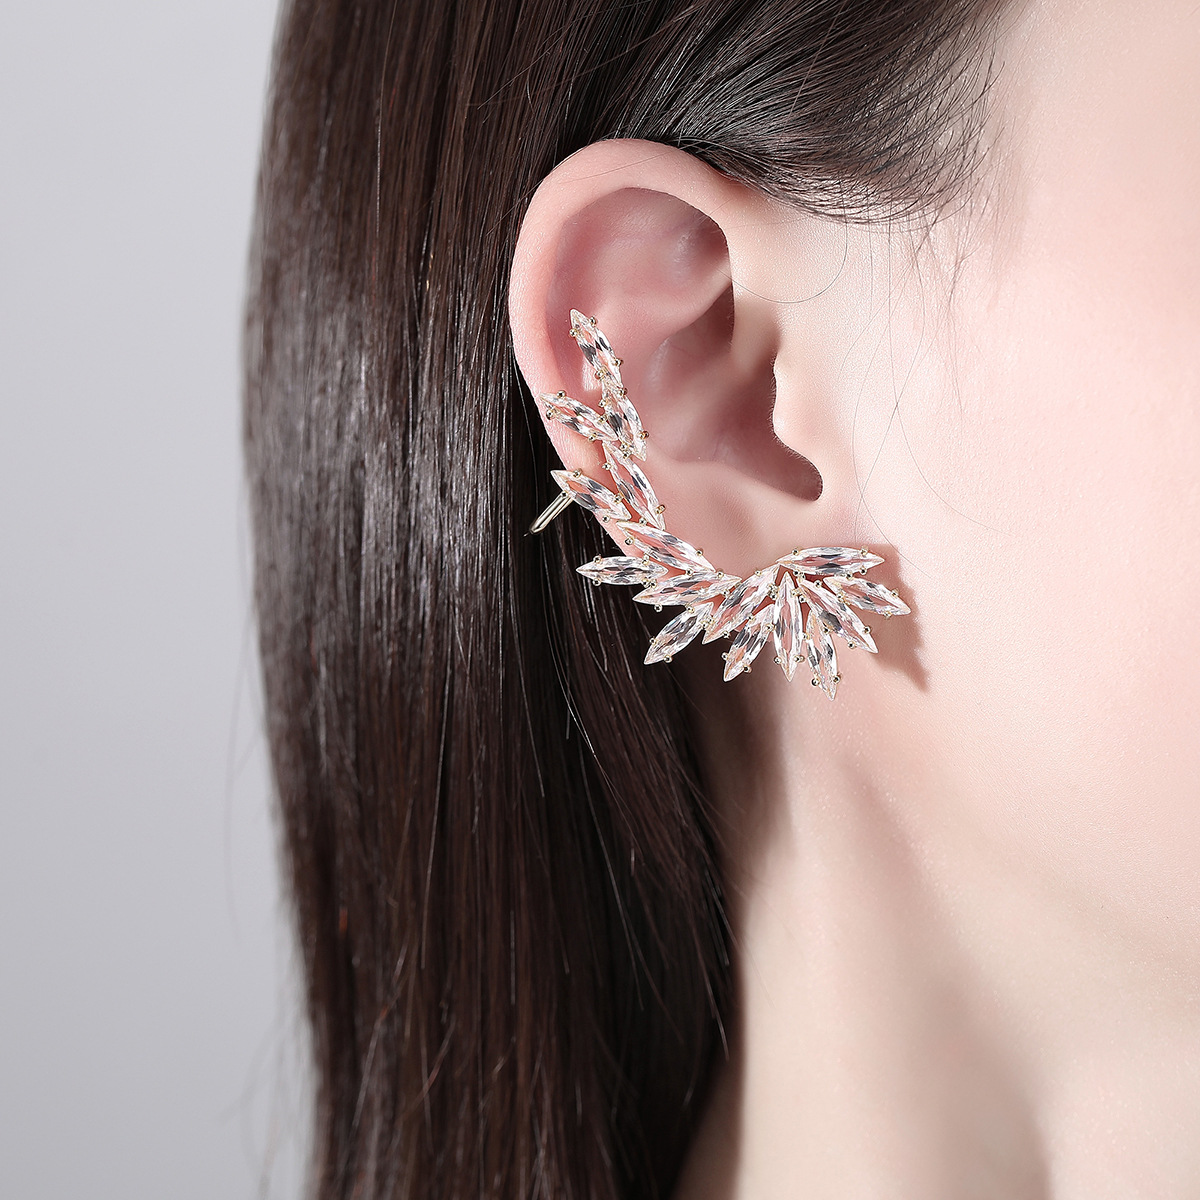 European style earrings